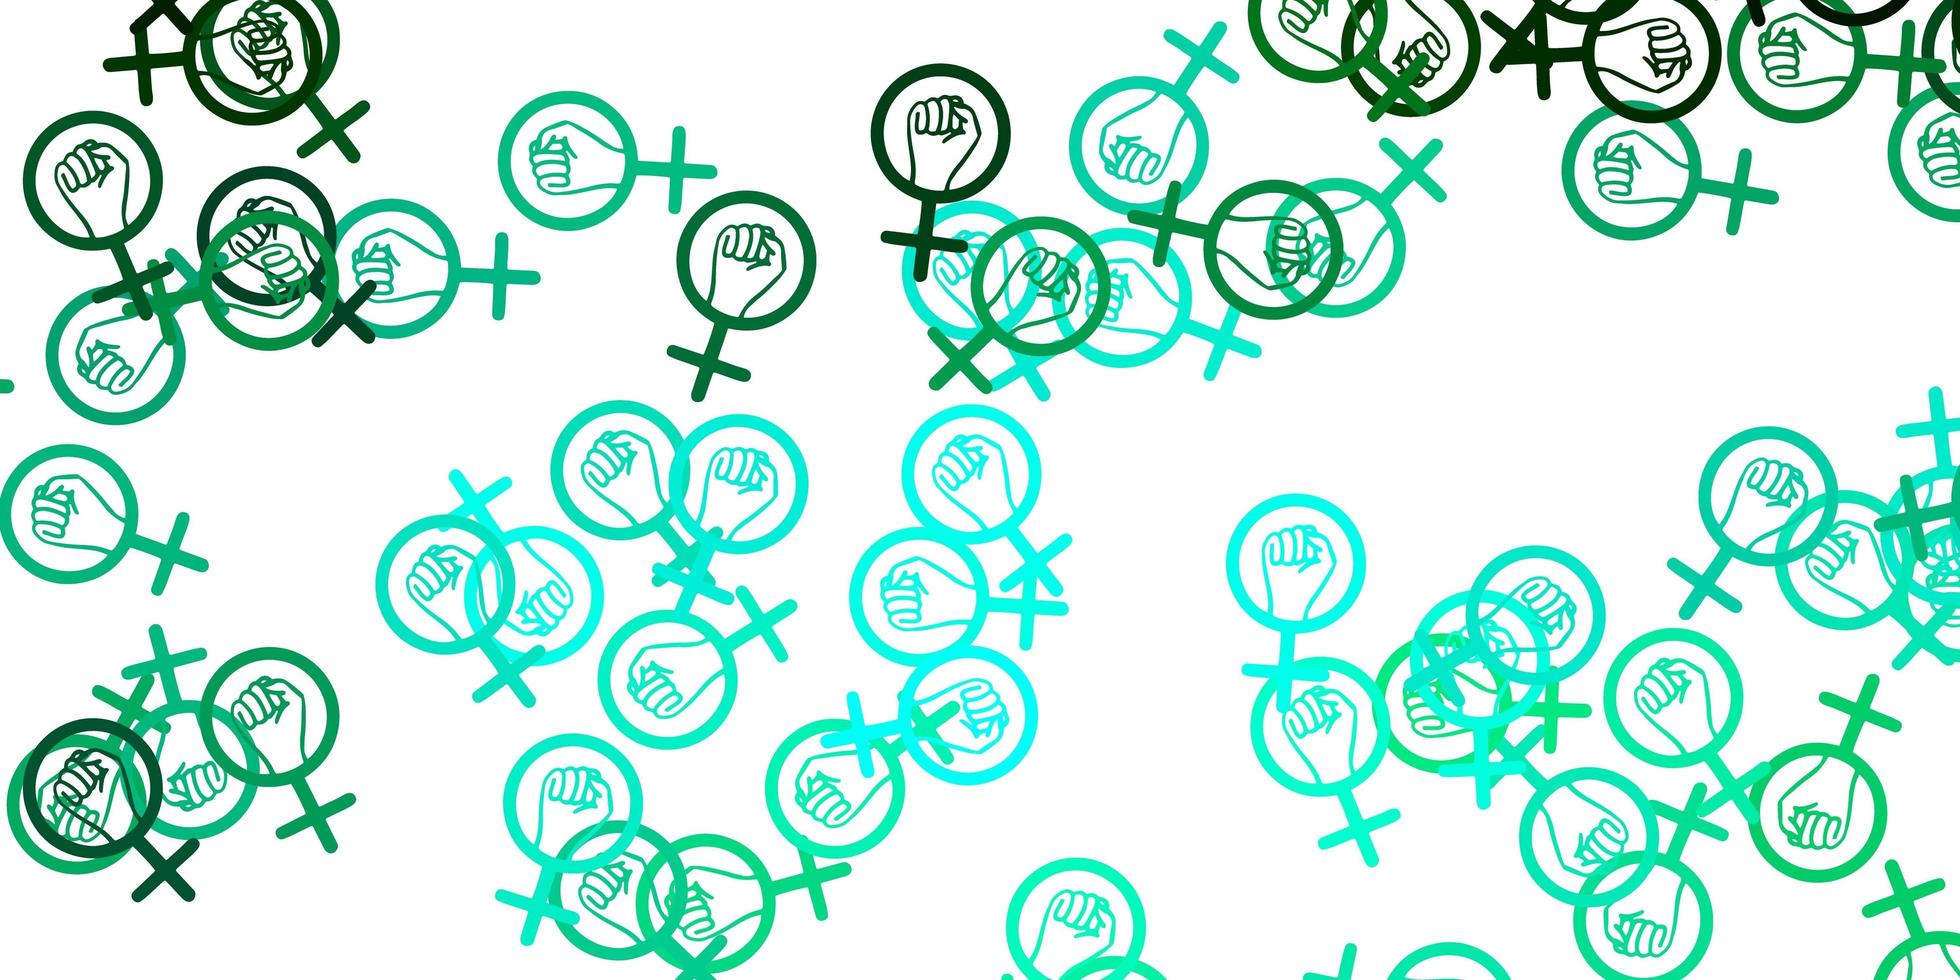 toile de fond de vecteur vert clair avec les symboles de puissance de la femme.